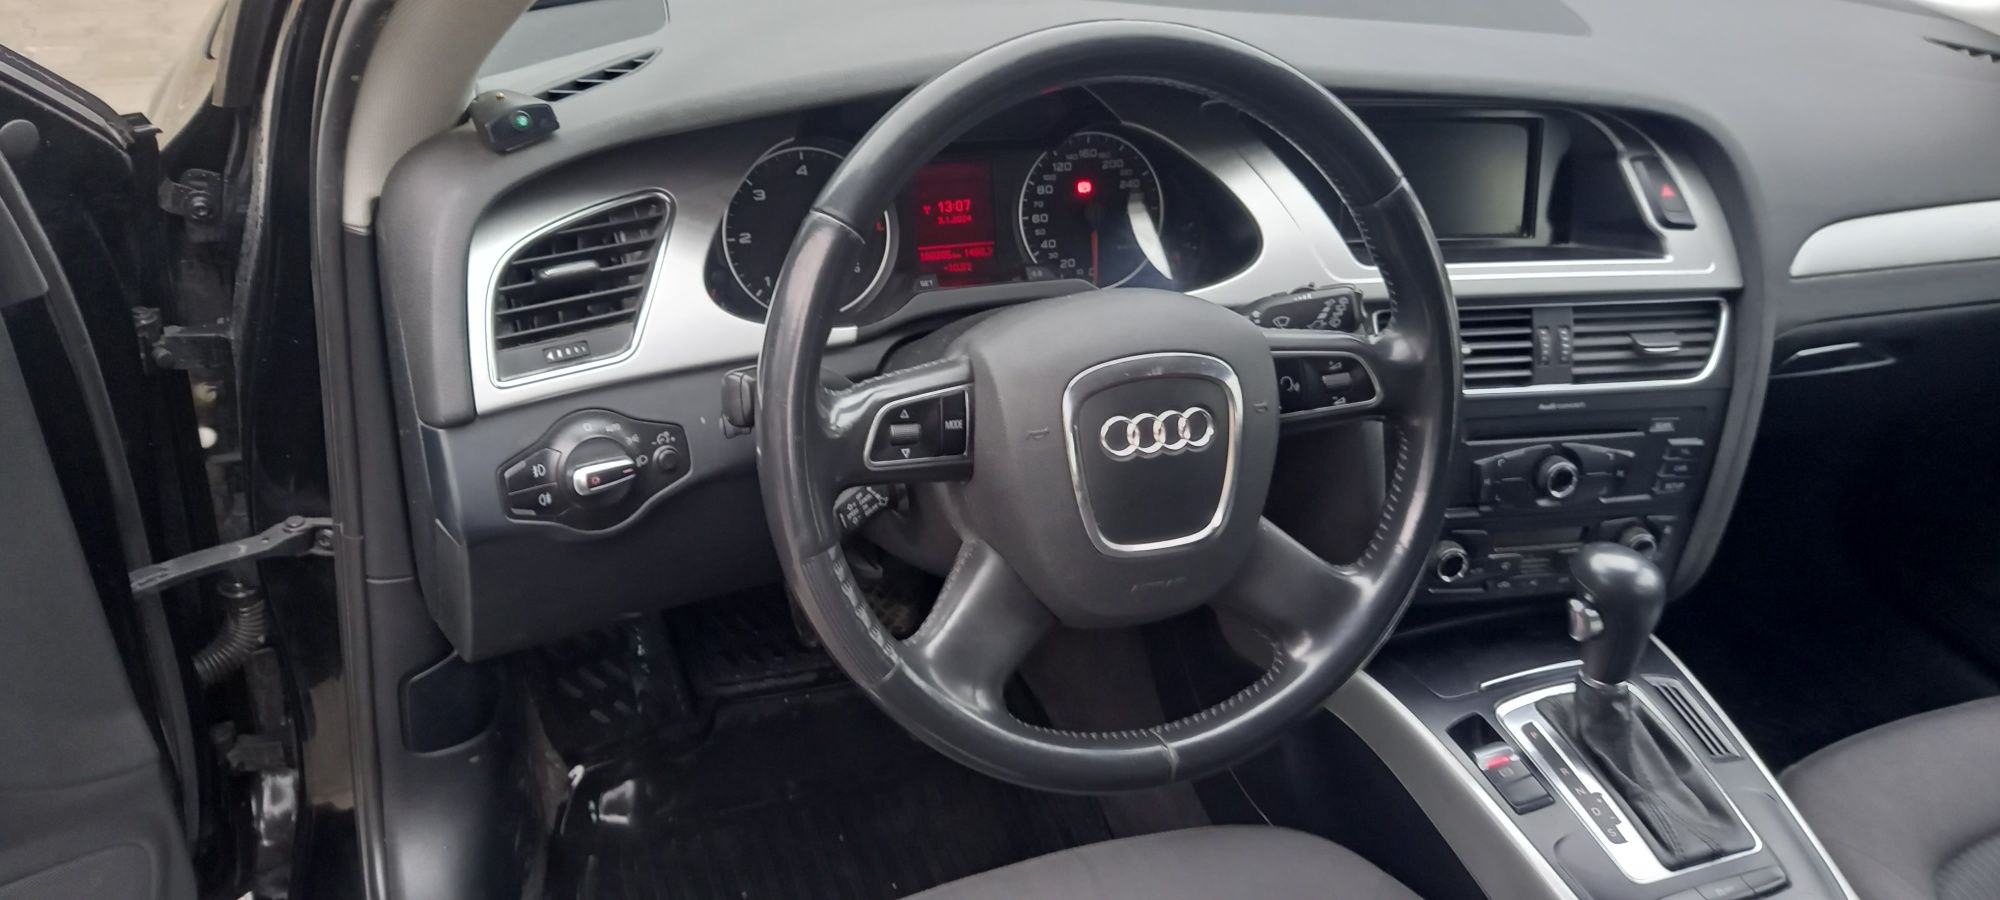 Vând Audi a4 b8 2012